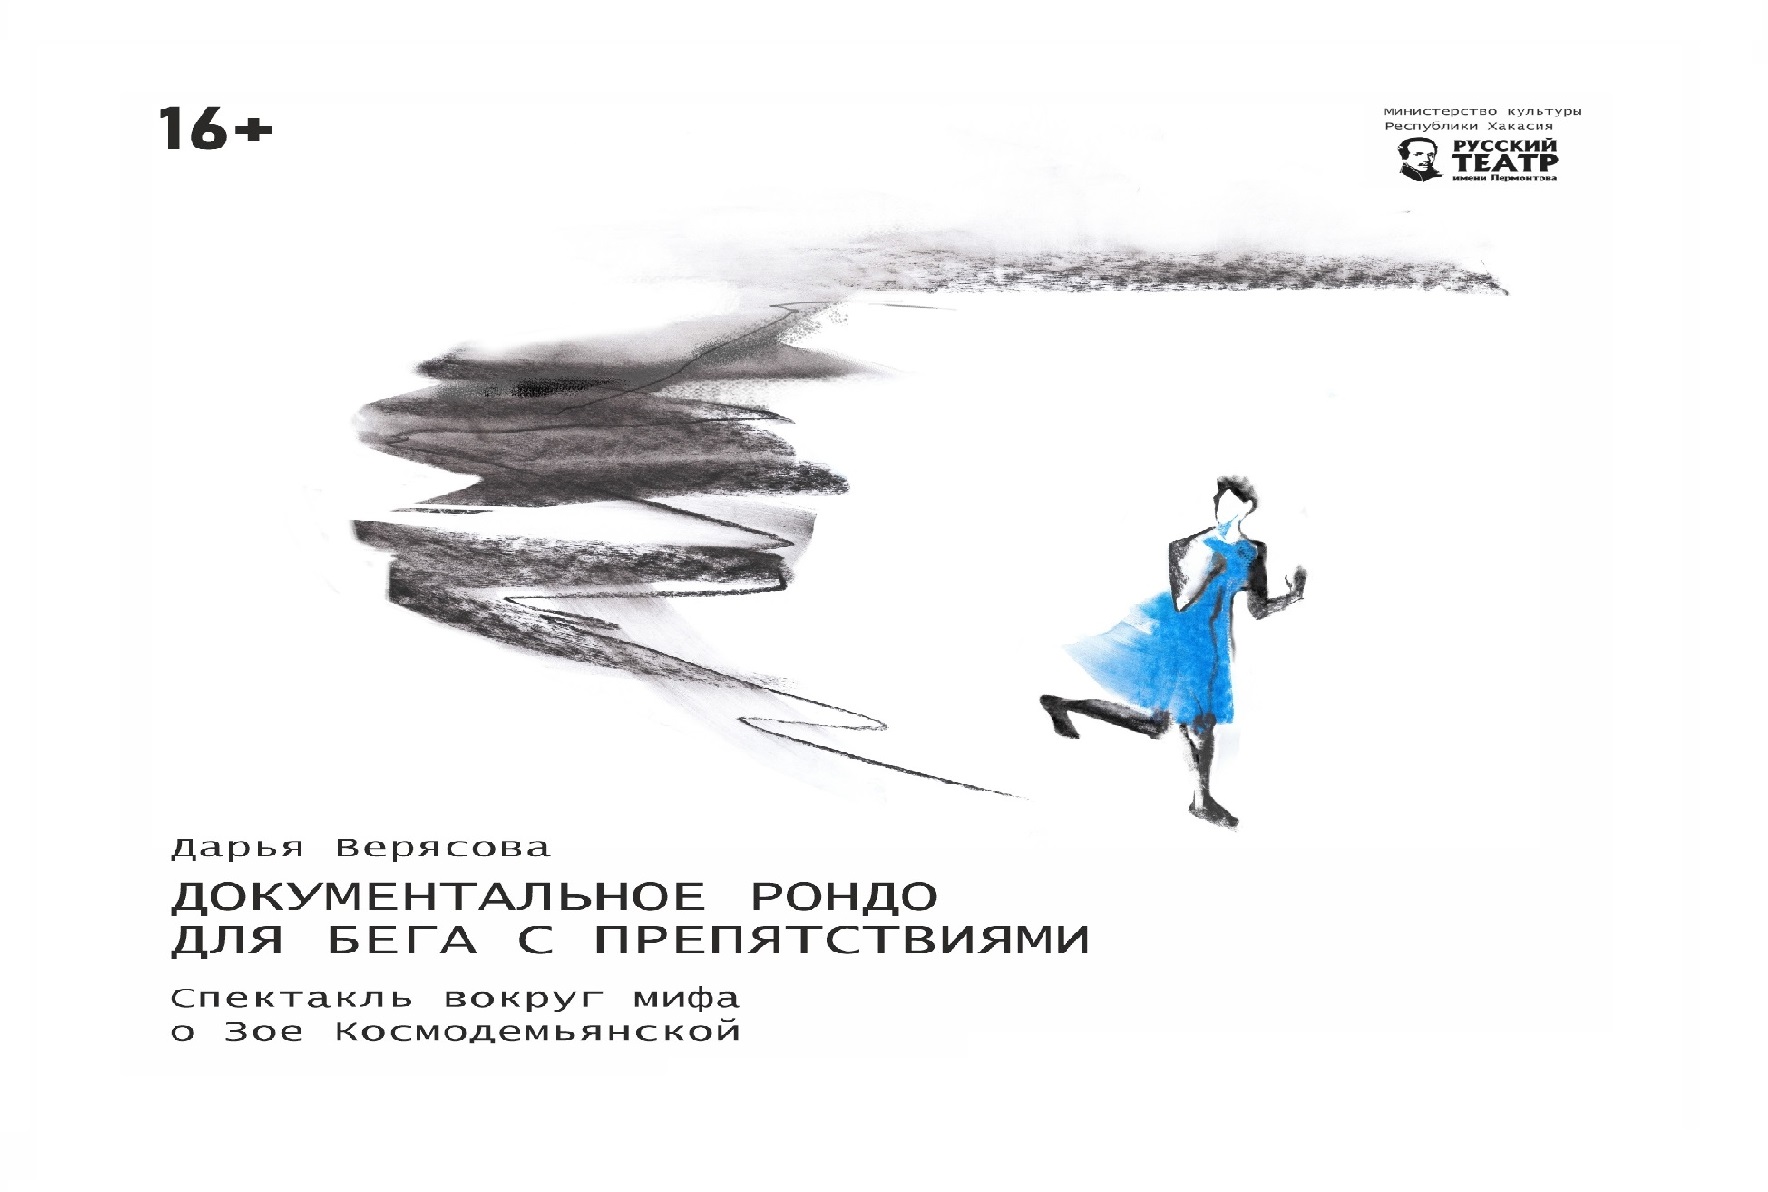 Спектакль вокруг мифа о Зое Космодемьянской "Документальное рондо для бега с препятствиями" (16+)